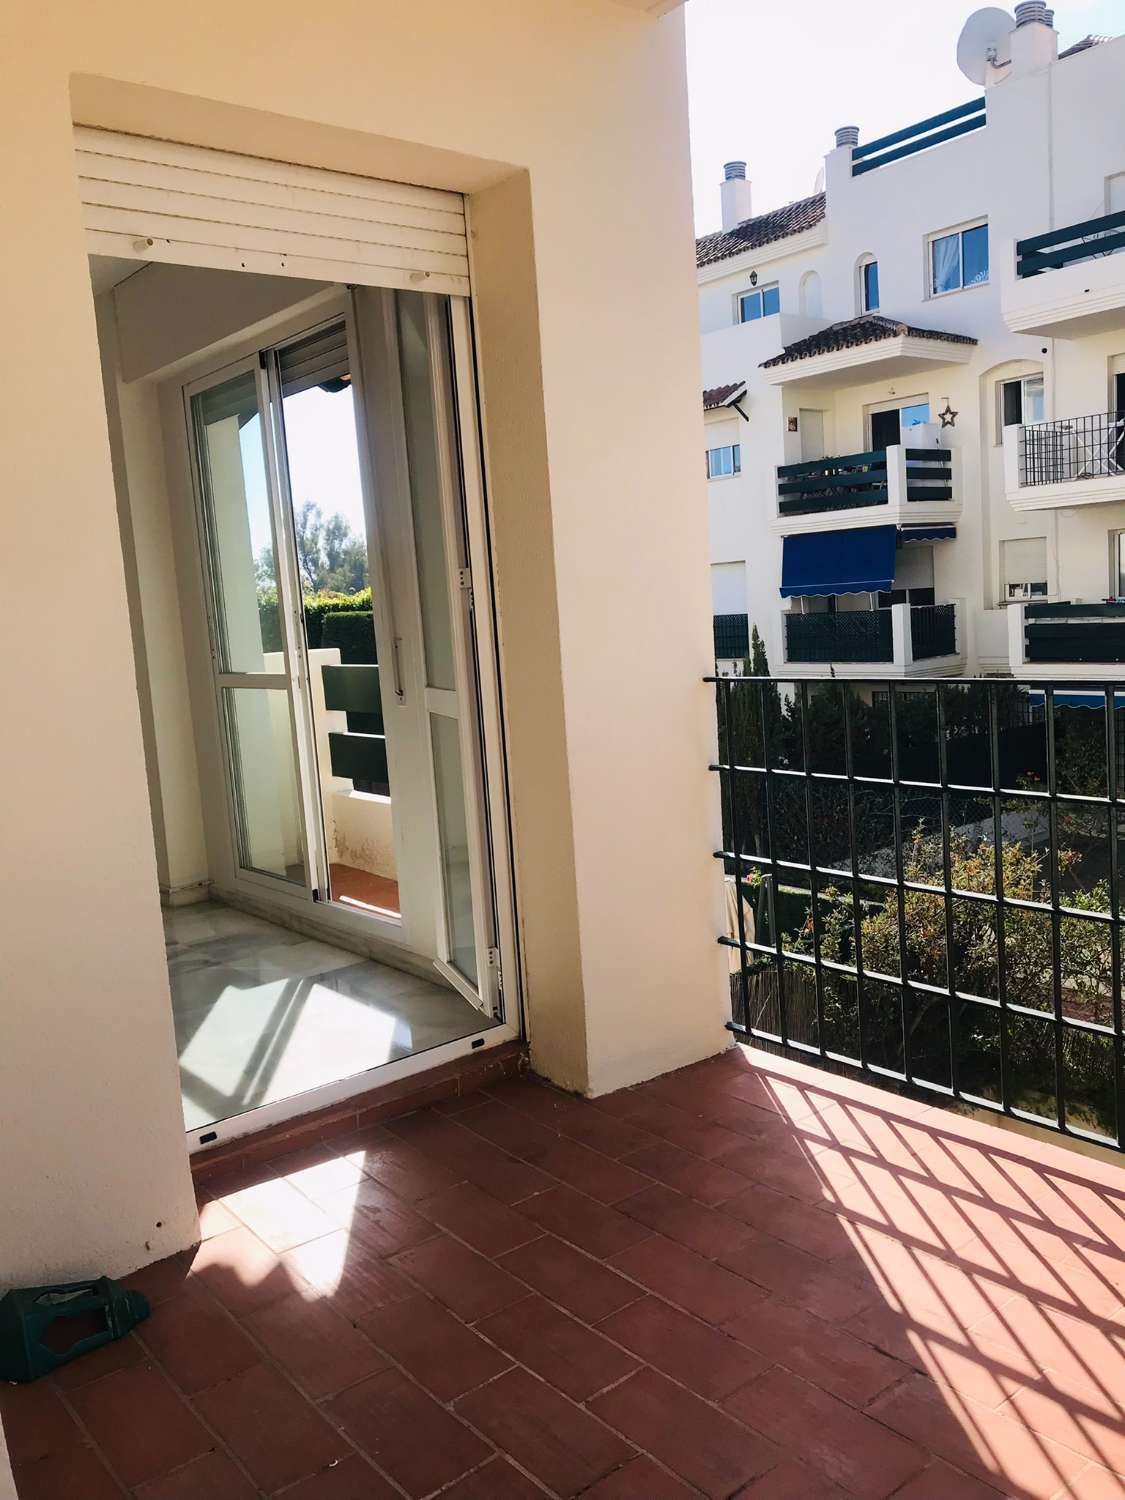 Encantador apartamento en venta. Ubicación conveniente cerca de Puerto Banús, Marbella.